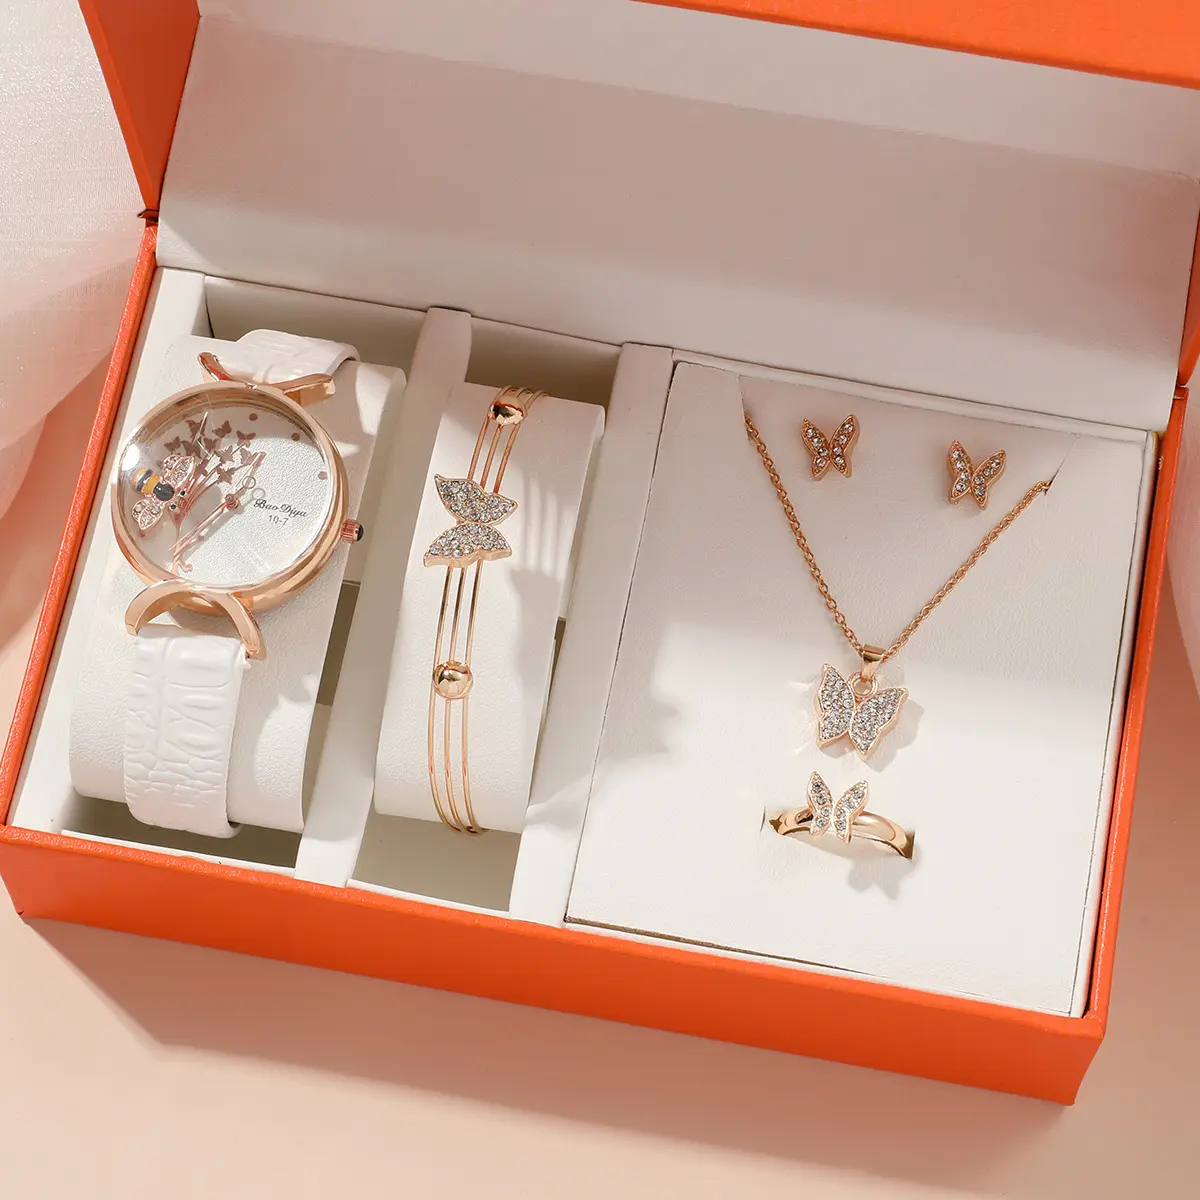 Nova venda quente abelha Mulheres quartzo relógio e borboleta pulseira colar brincos anel jóias conjunto YuSa76